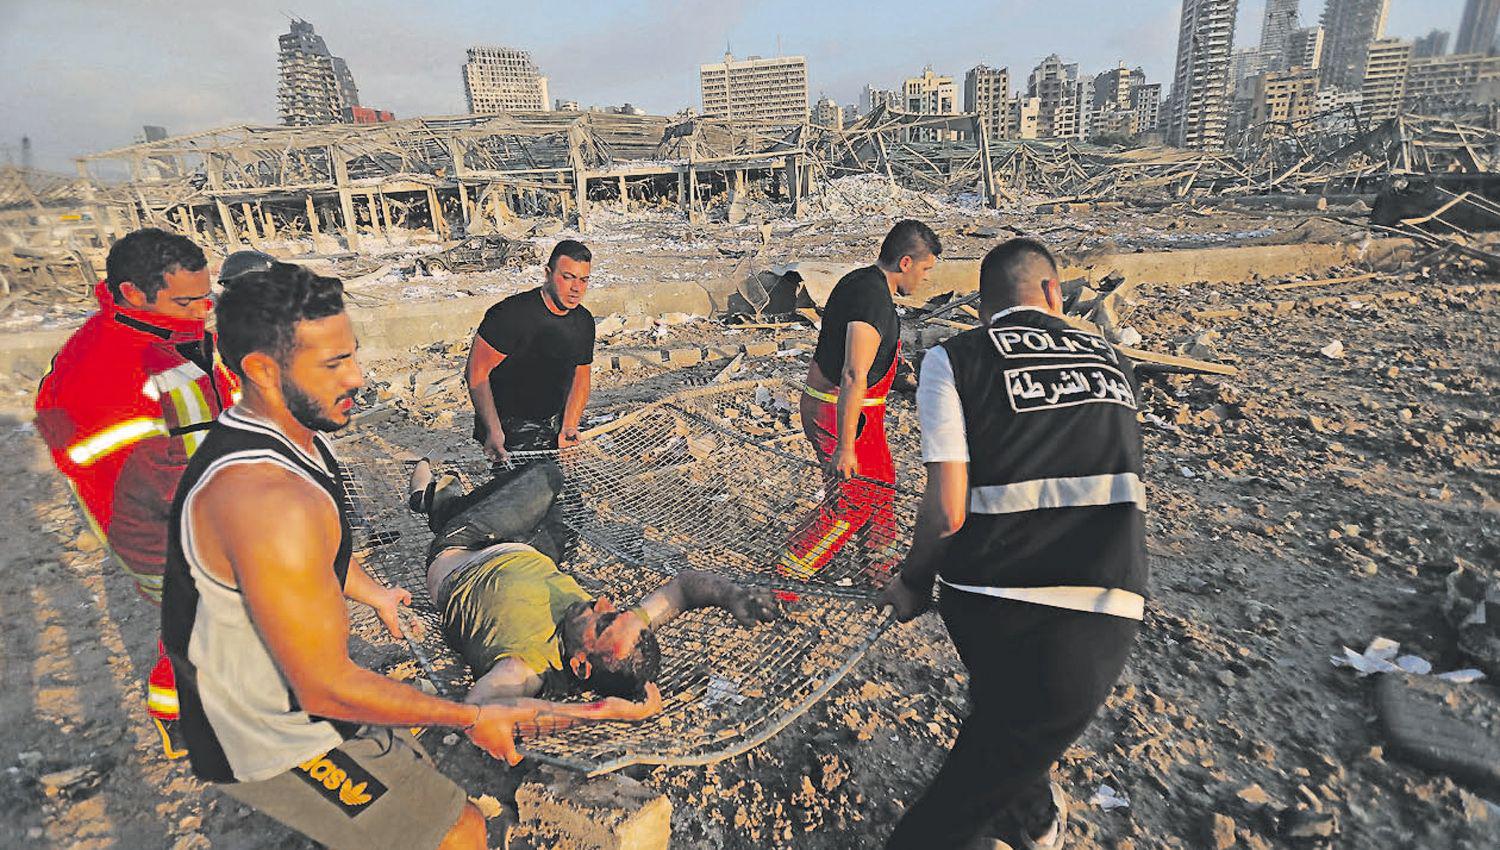 Las explosiones tomaron por sorpresa a miles de
libaneses en Beirut El n�mero de muertos podría aumentar con el correr de las horas